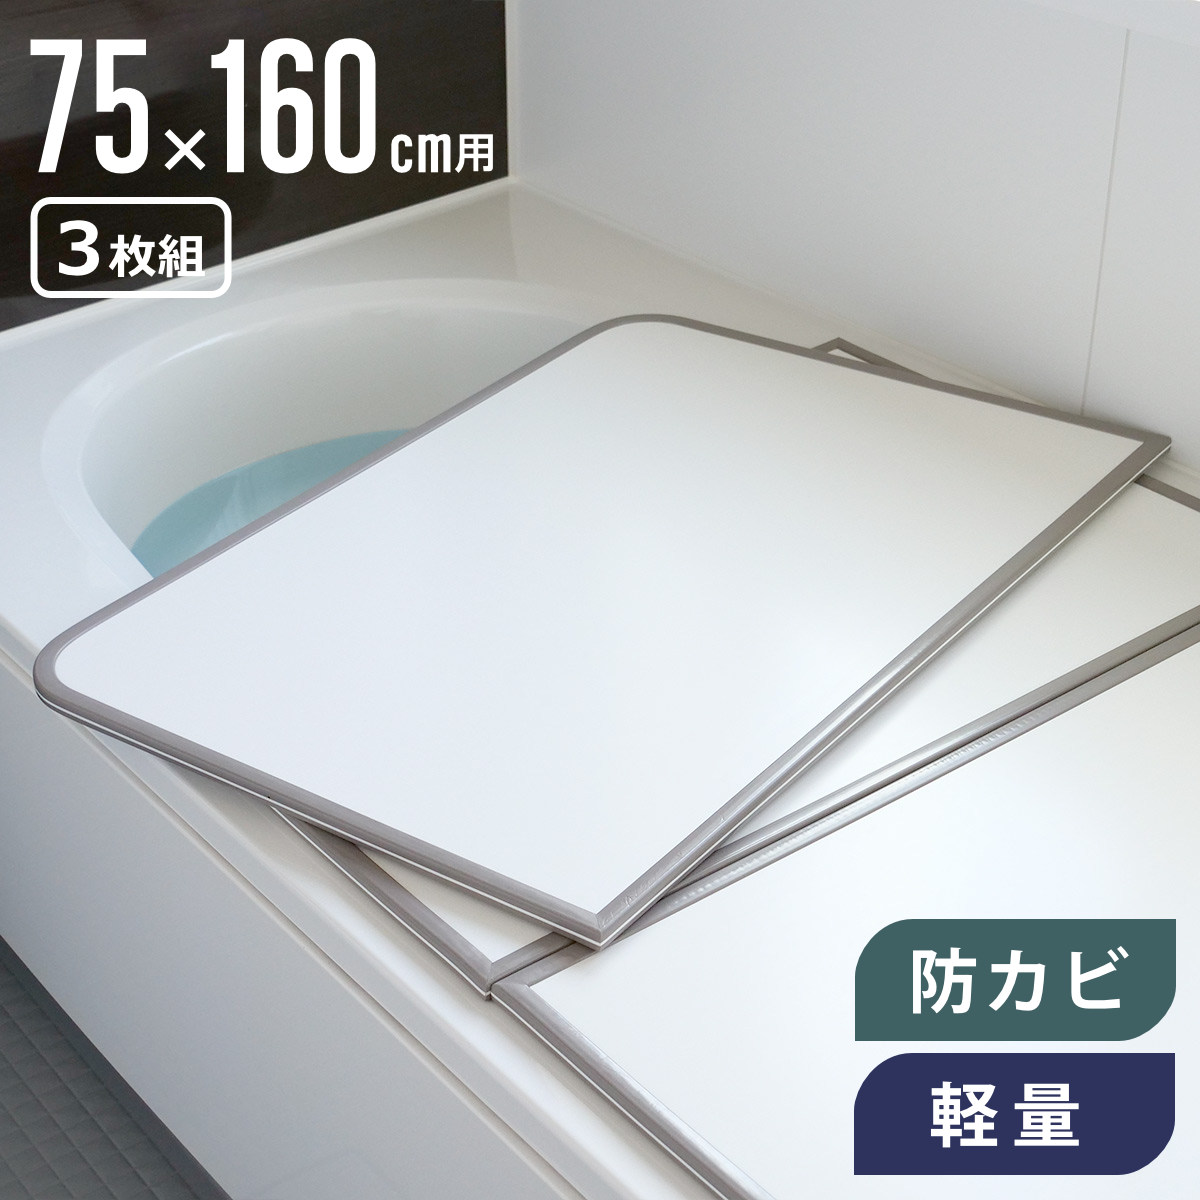 風呂ふた 組み合わせ 軽量 カビの生えにくい風呂ふた L-16 75×160cm 実寸73×158cm 3枚組 （ 風呂蓋 風呂フタ 風呂 ふた 保温 かびにく